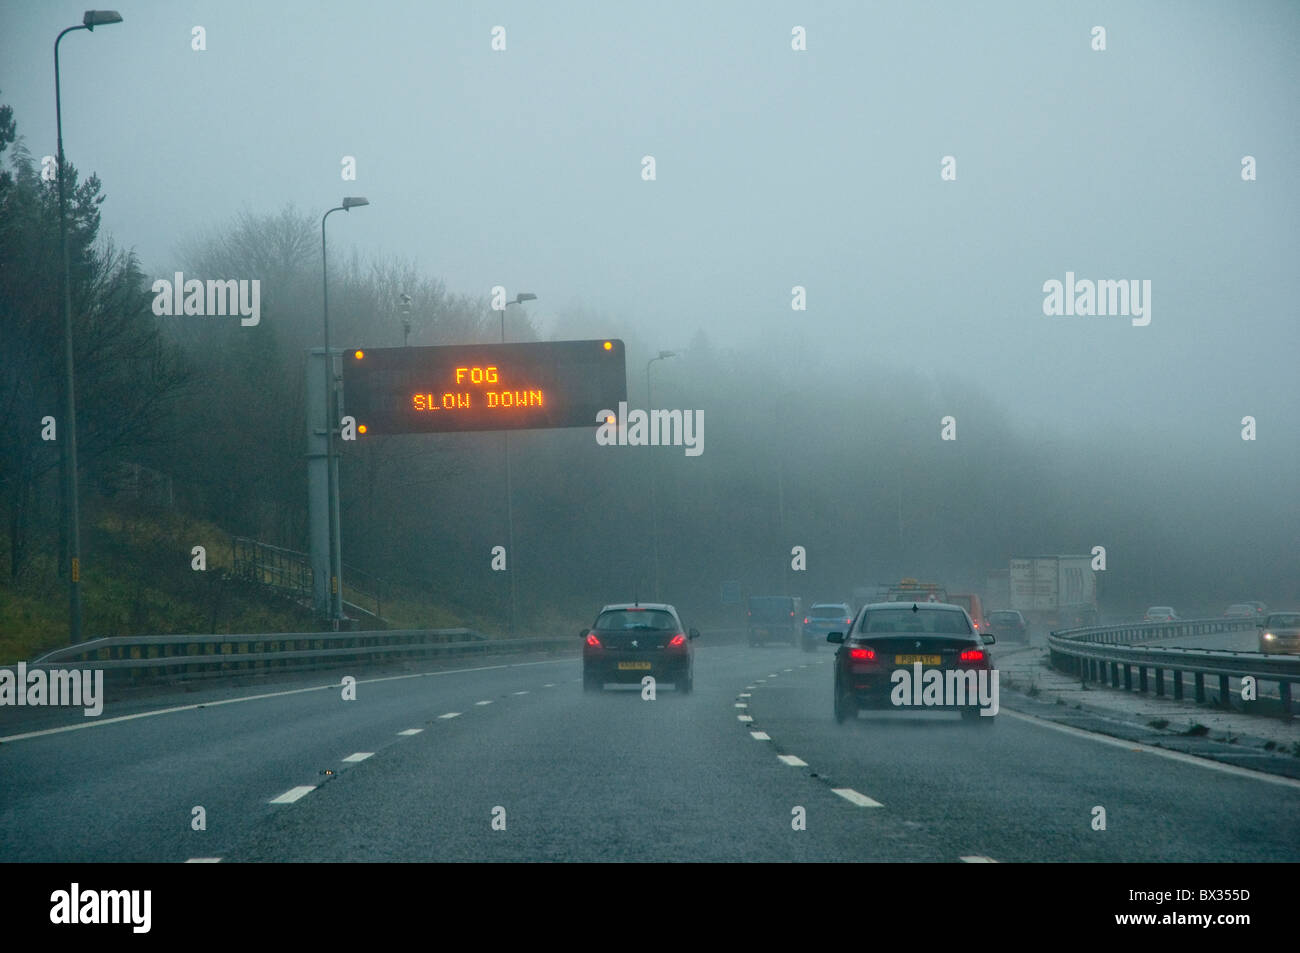 Brouillard 'Ralentir' - l'autoroute panneau d'avertissement. Point de vue des pilotes avec des voitures et la mauvaise visibilité. M5, au Royaume-Uni. Banque D'Images